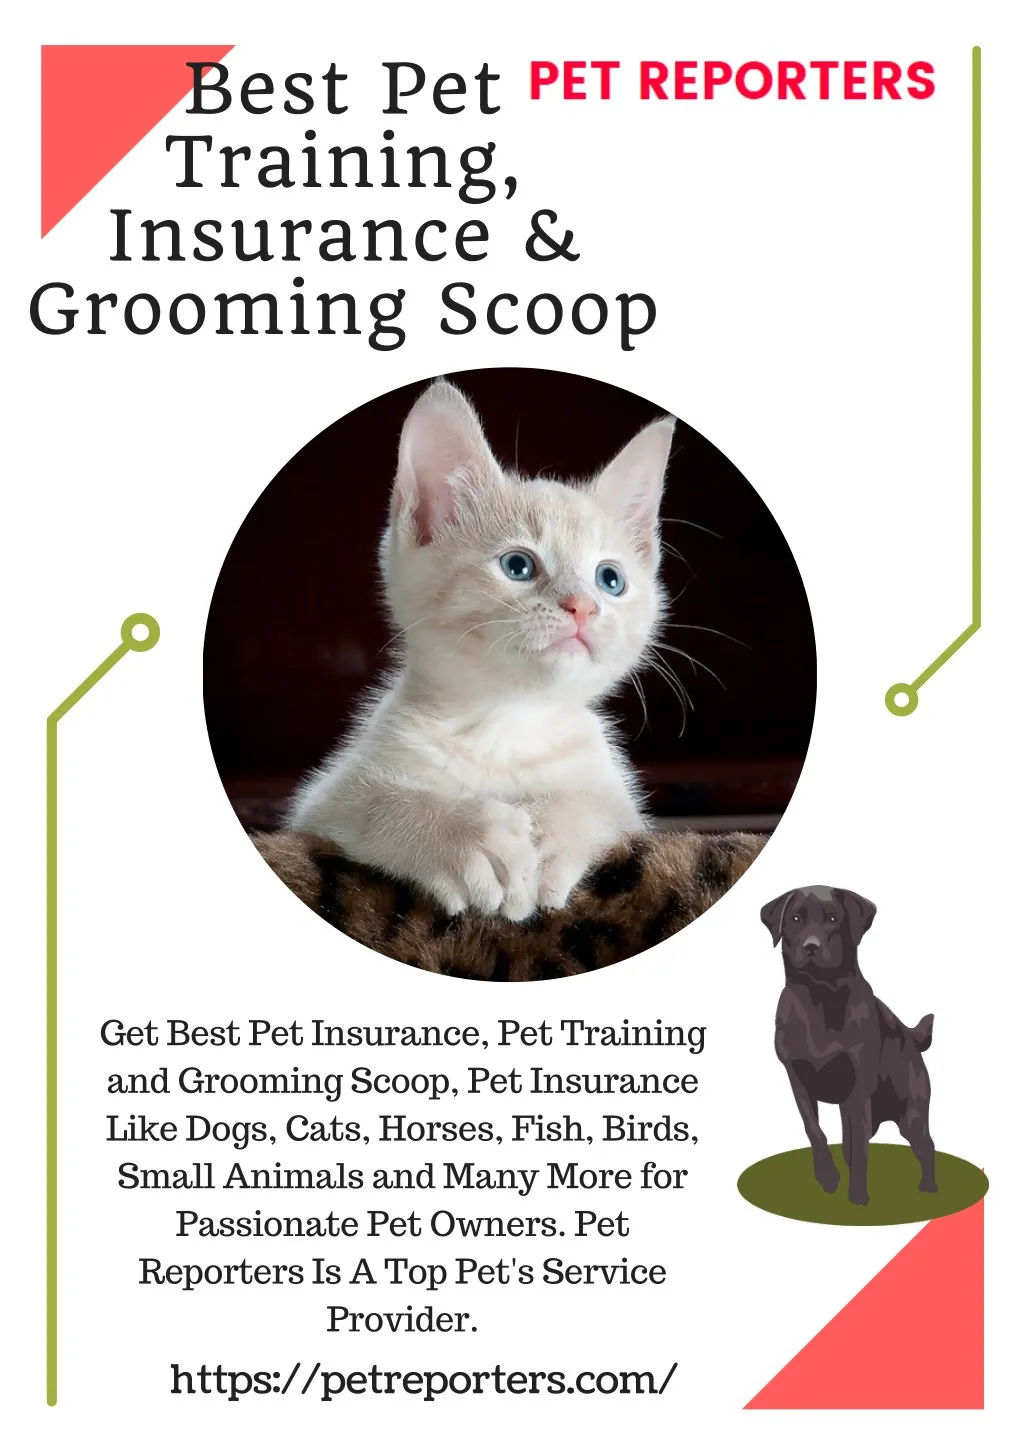 best pet training insurance grooming scoop